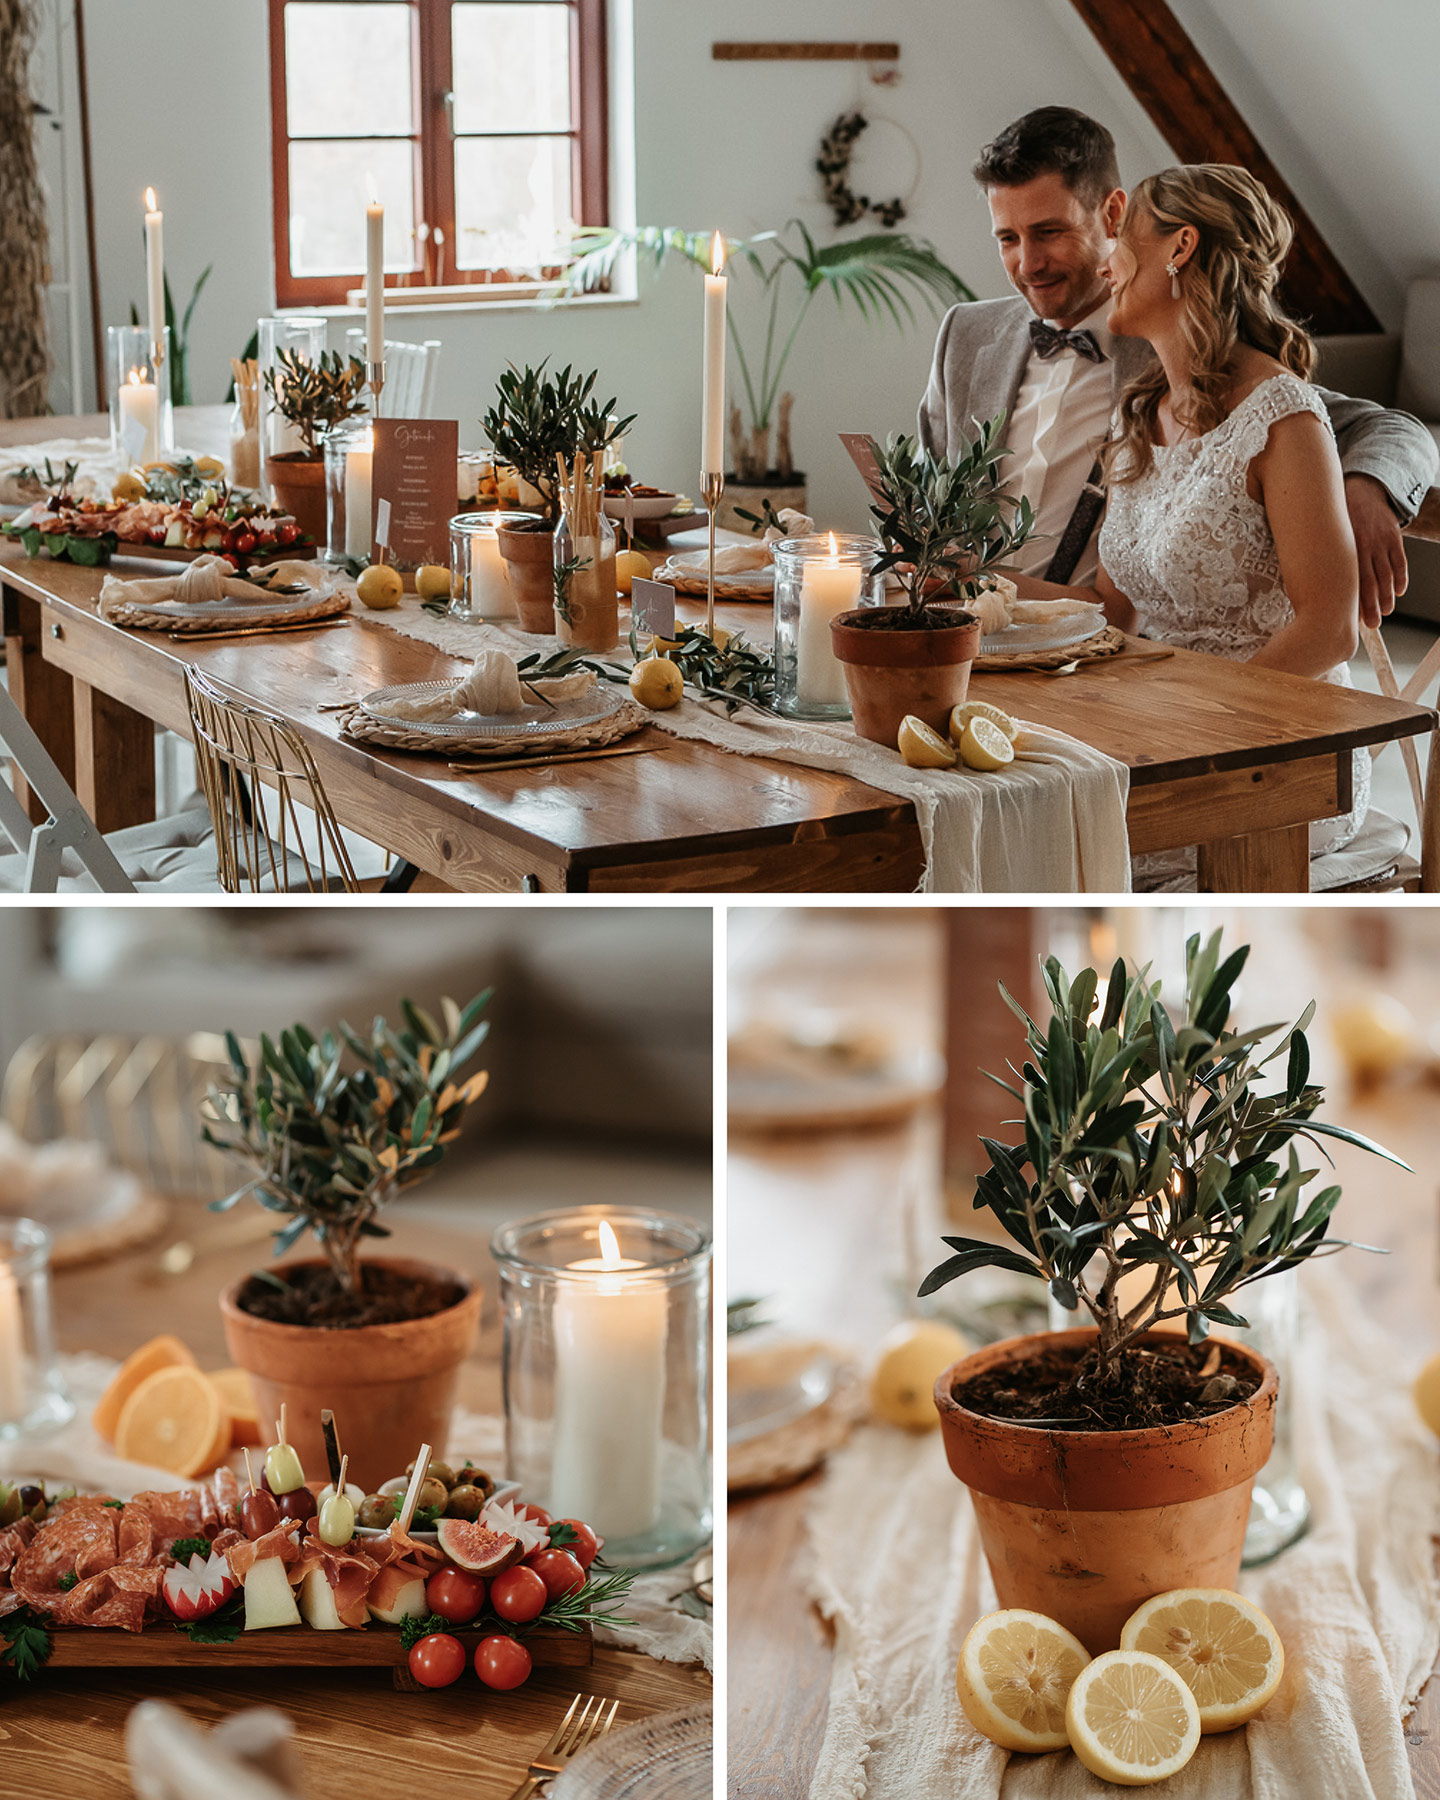 Ein rustikaler Holztisch bildet die Hochzeitstafel. Geschmückt mit einem Läufer aus Leinen, Kerzenständen, kleinen Olivenbäumchen und Windlichtern harmonieren die drei Stile rustikal, boho und greenery optimal miteinander.